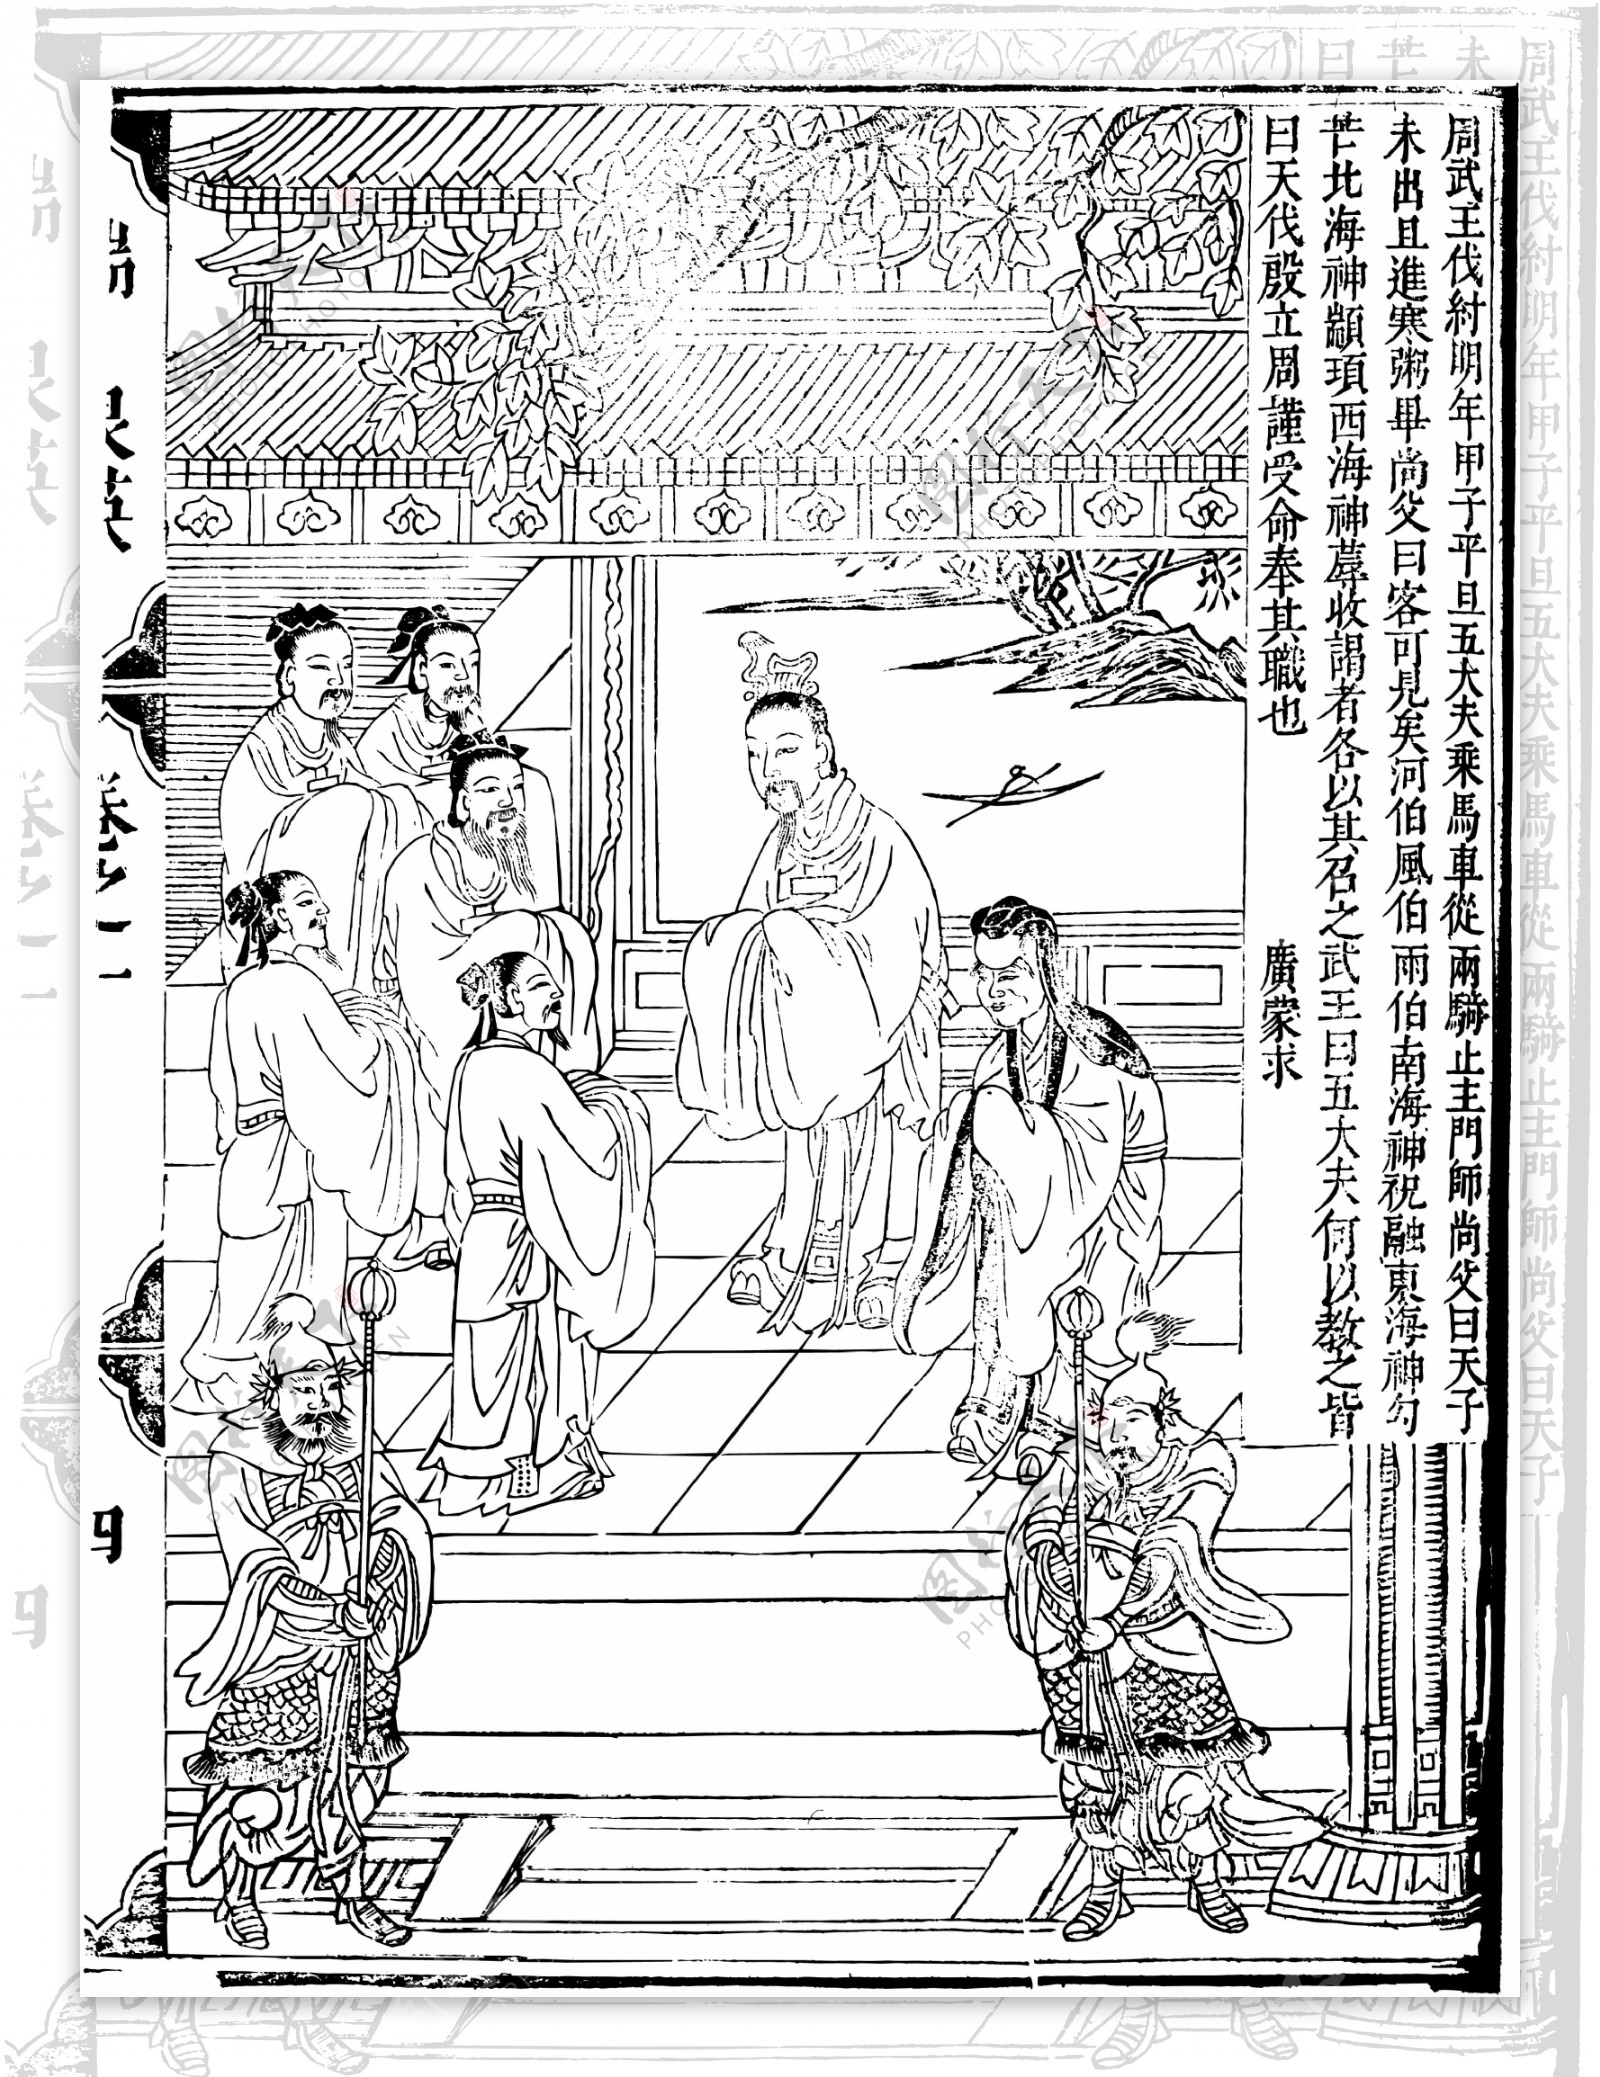 瑞世良英木刻版画中国传统文化29